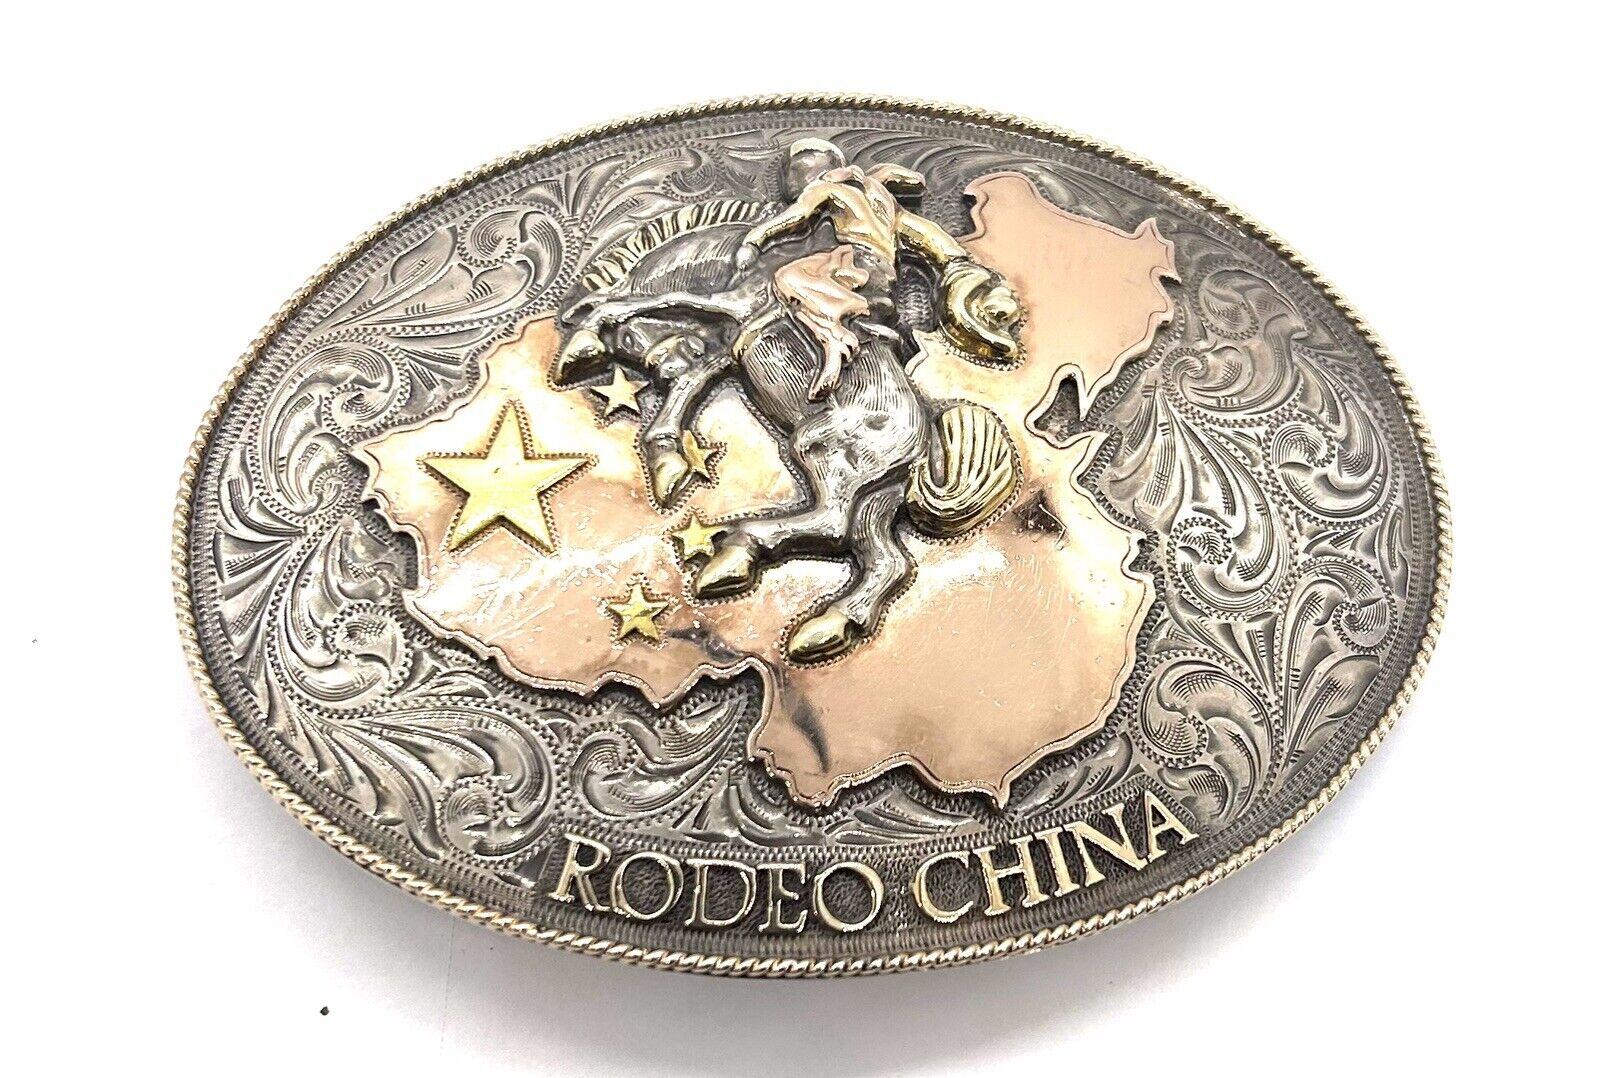 Rare Edward H Bohlin Belt Buckle #1 Of 50 Rodeo China Sterling 14k 22k Gold